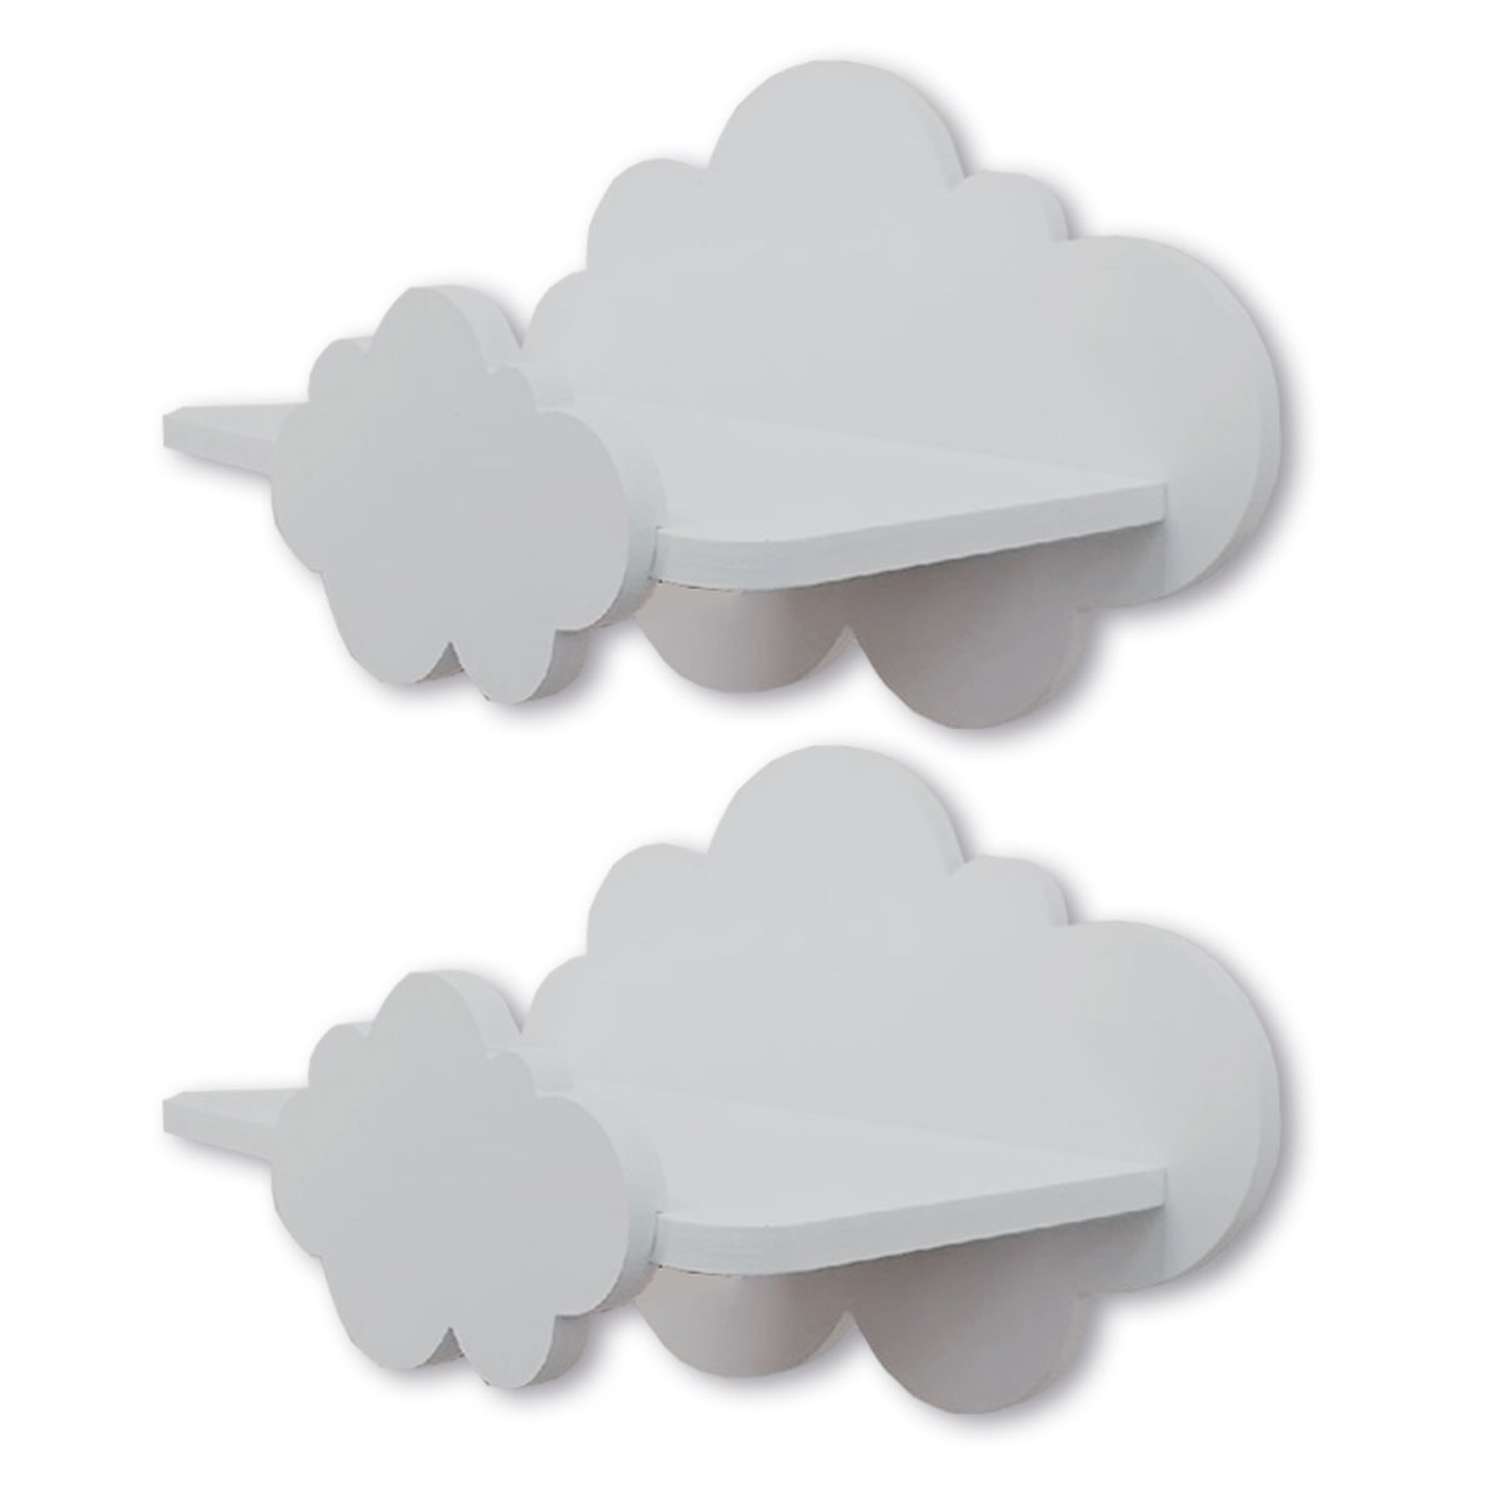 Полки для детской Pema kids набор облака серые 2 шт МДФ - фото 1